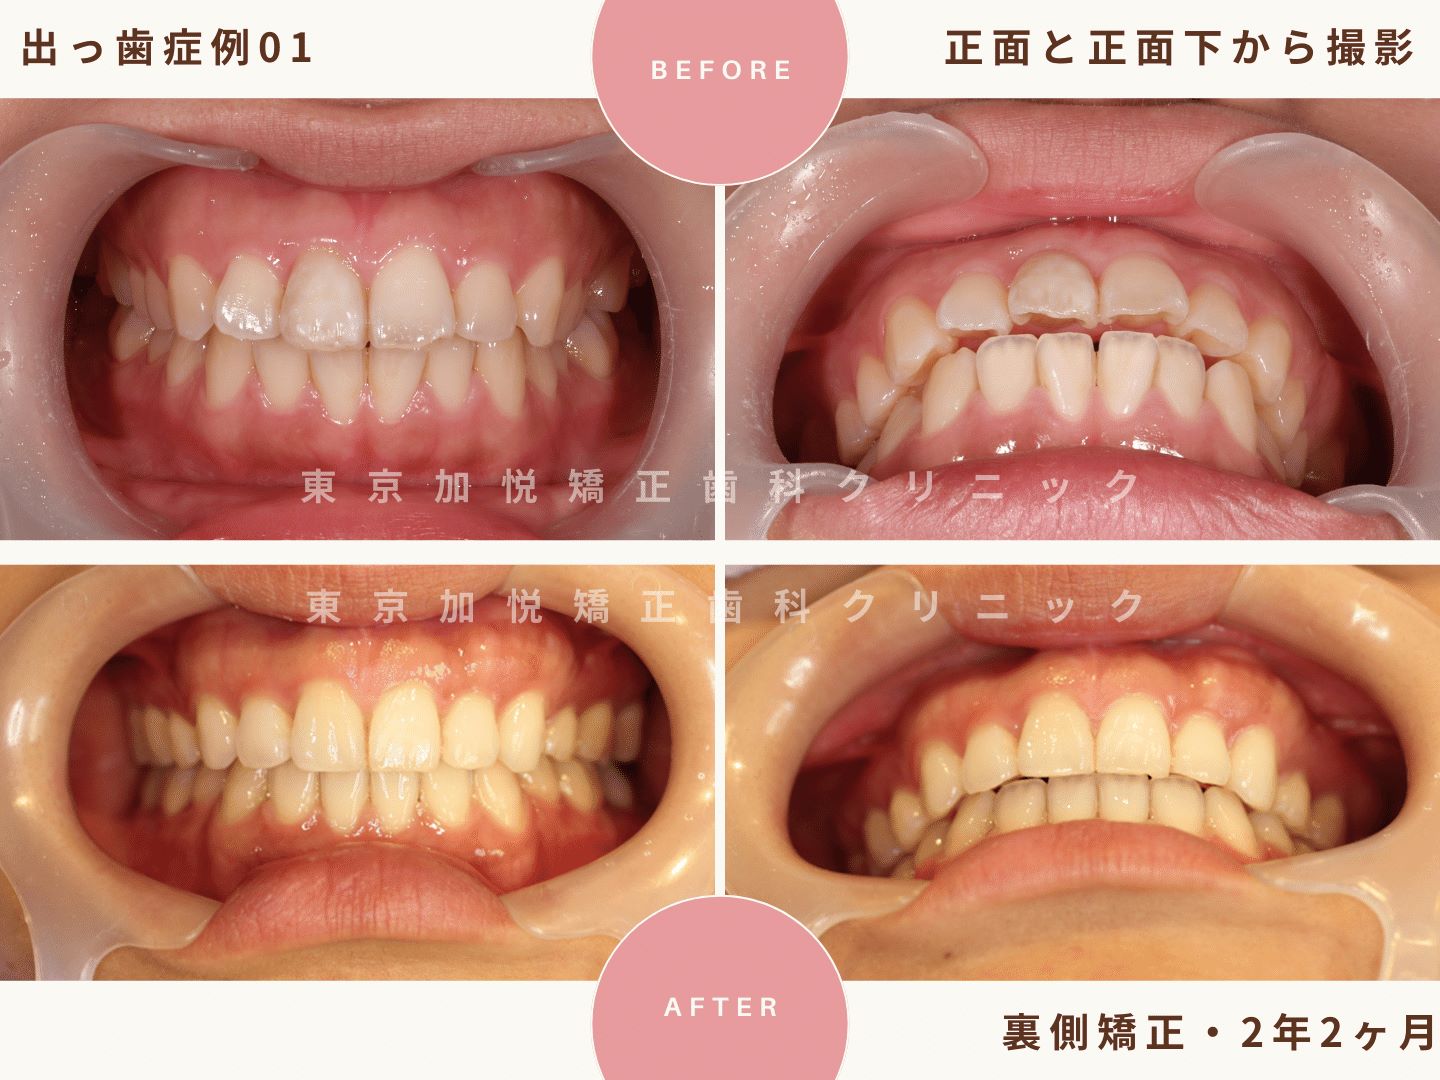 出っ歯矯正症例１、正面と正面下からの撮影BeforeAfter